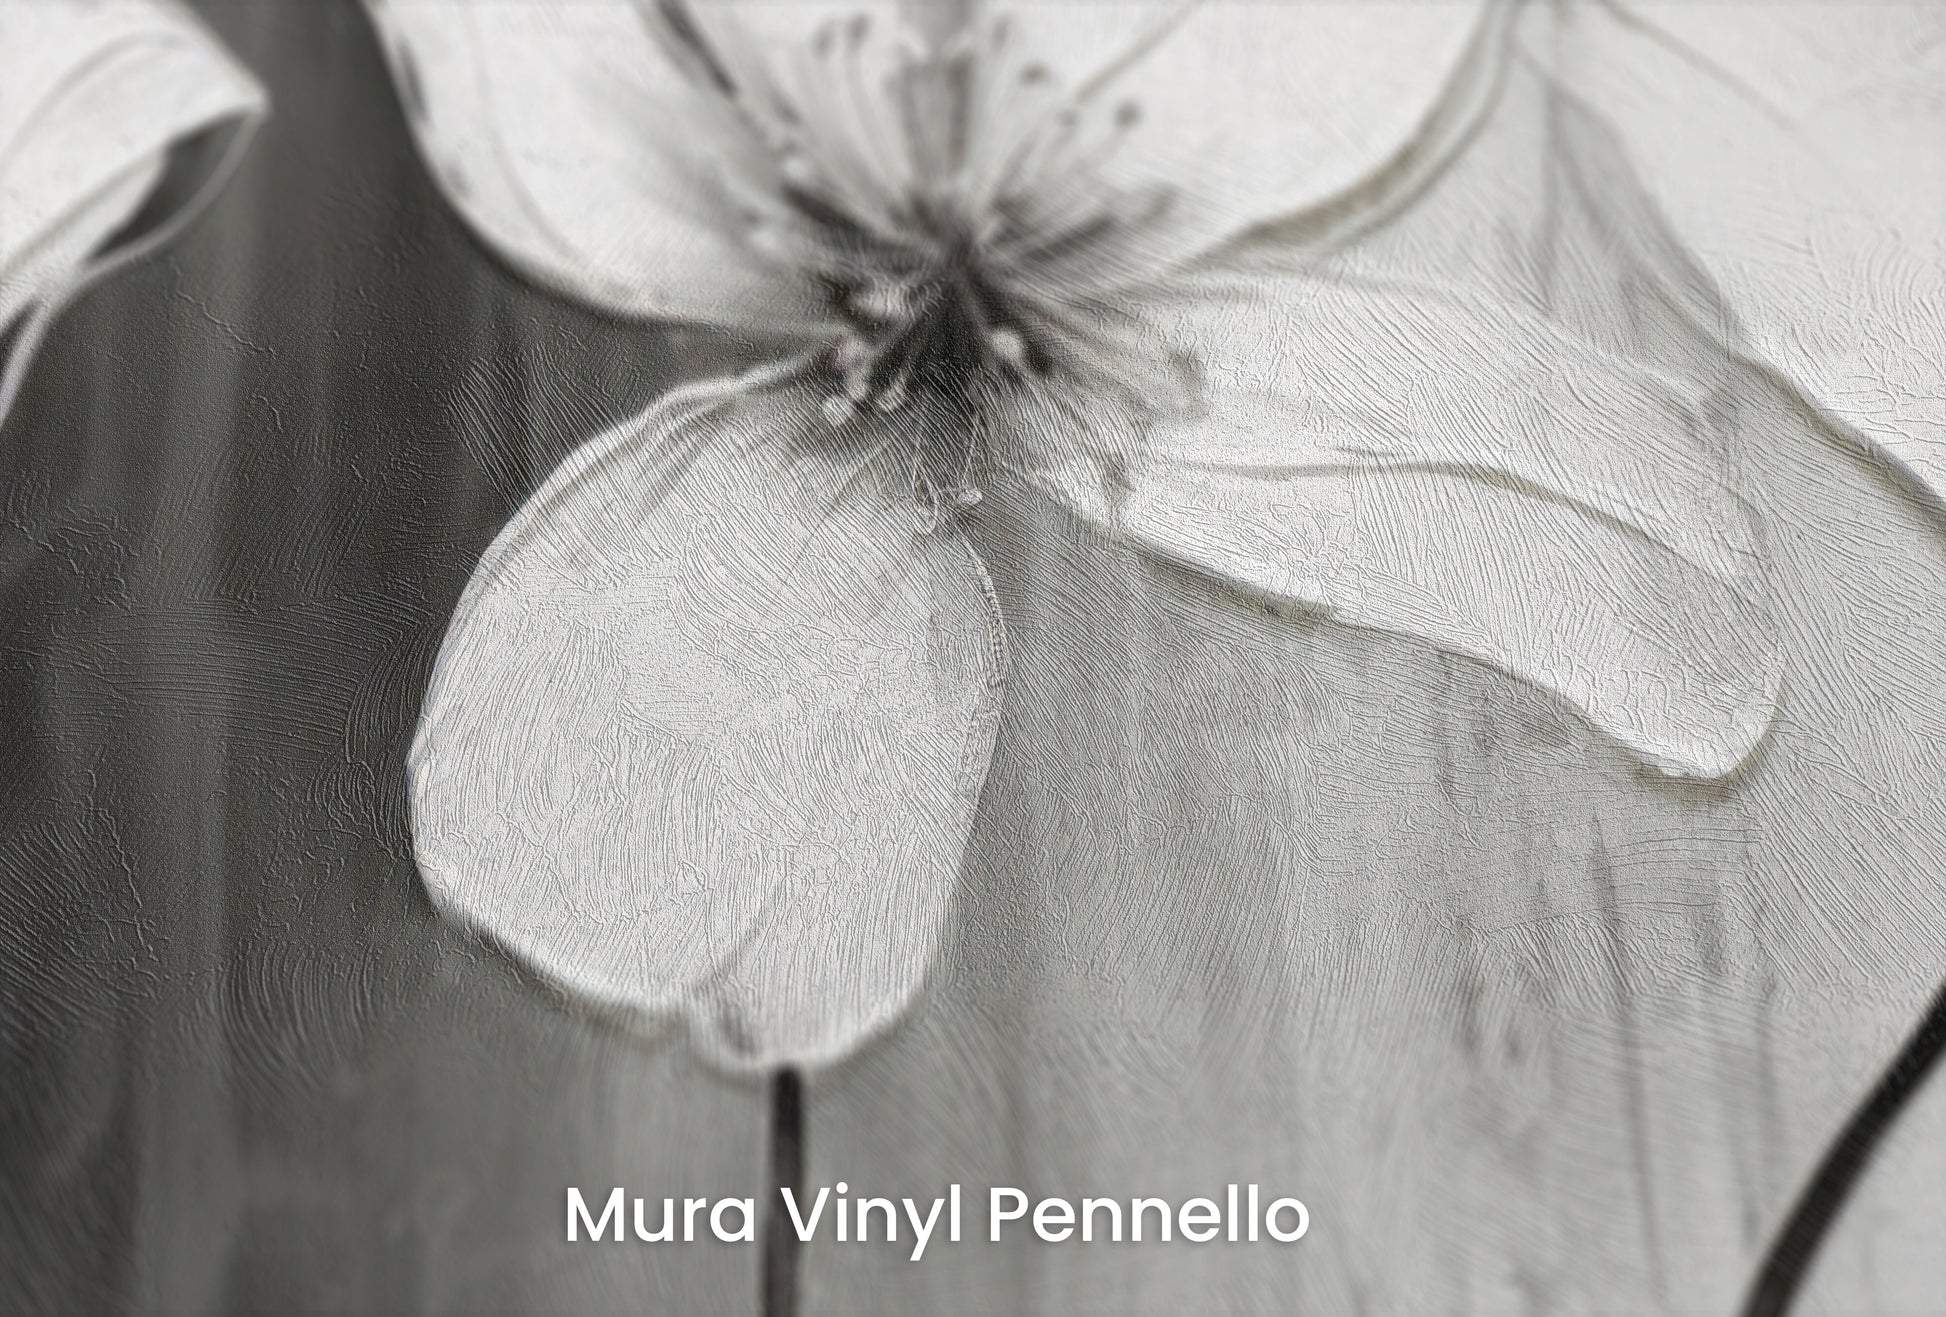 Zbliżenie na artystyczną fototapetę o nazwie CHIAROSCURO BLOSSOMS na podłożu Mura Vinyl Pennello - faktura pociągnięć pędzla malarskiego.